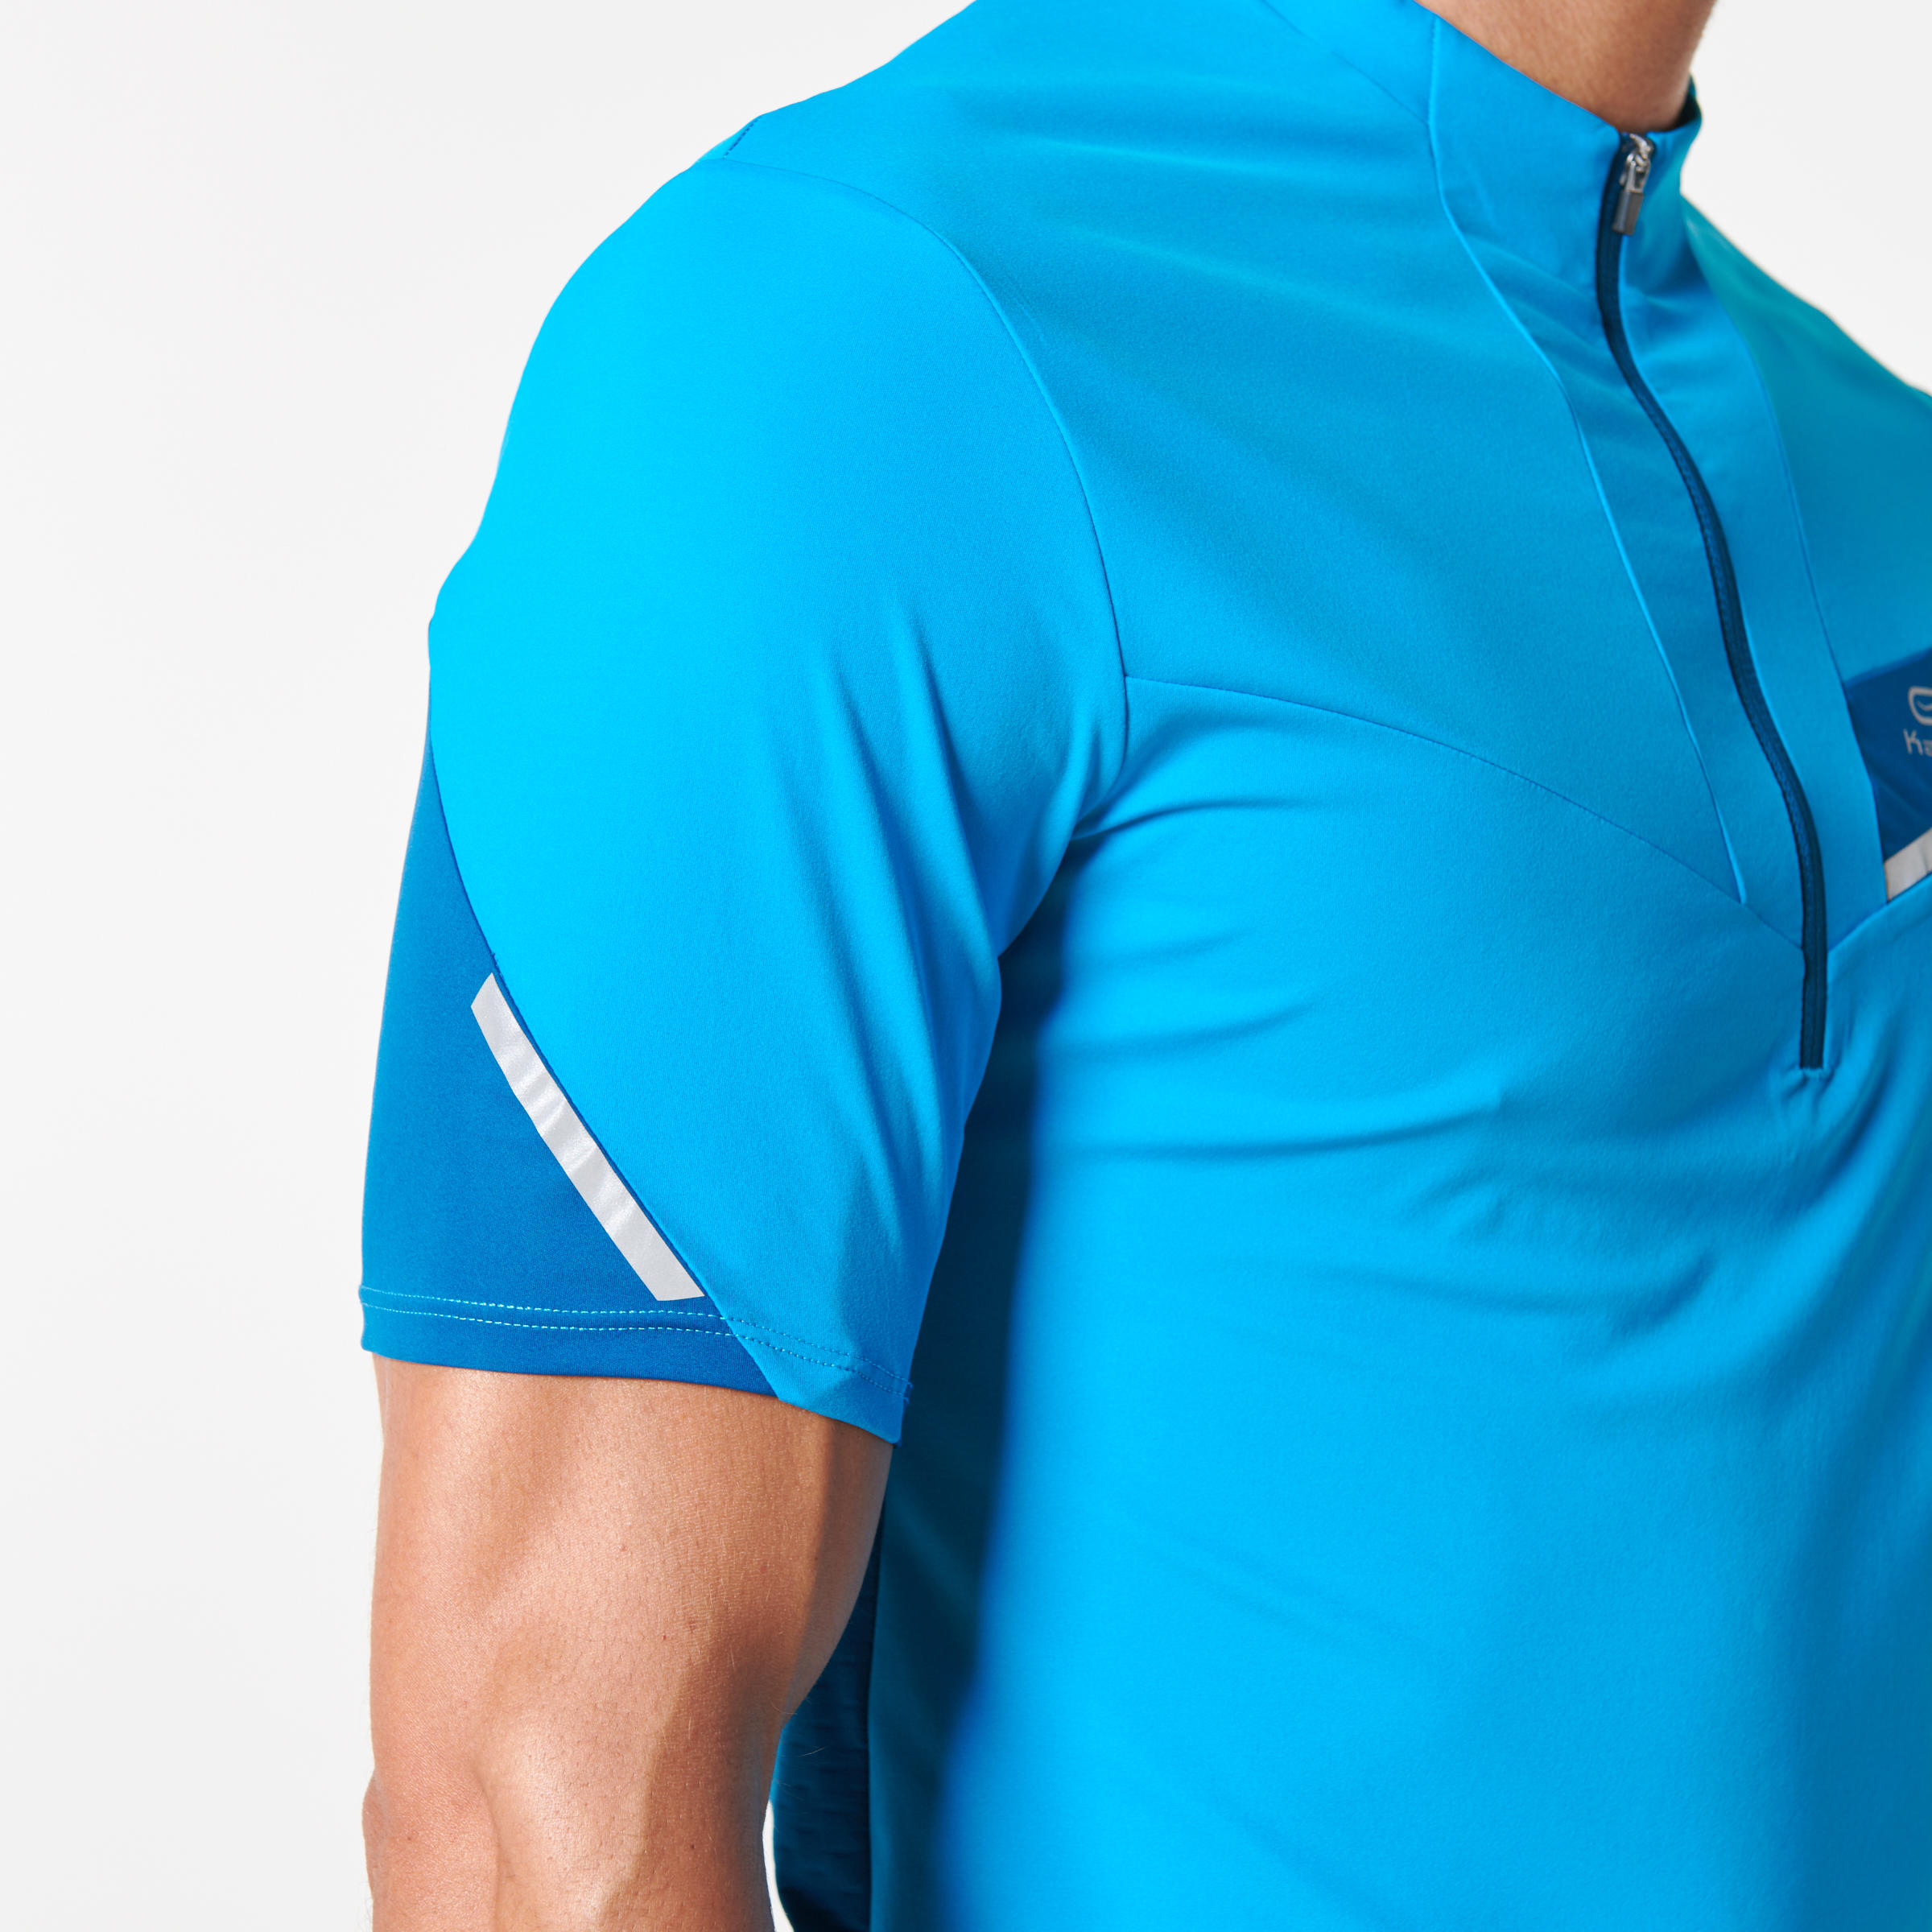 Men's Trail Running Short-Sleeved T-shirt - Blue/Turquoise 9/11